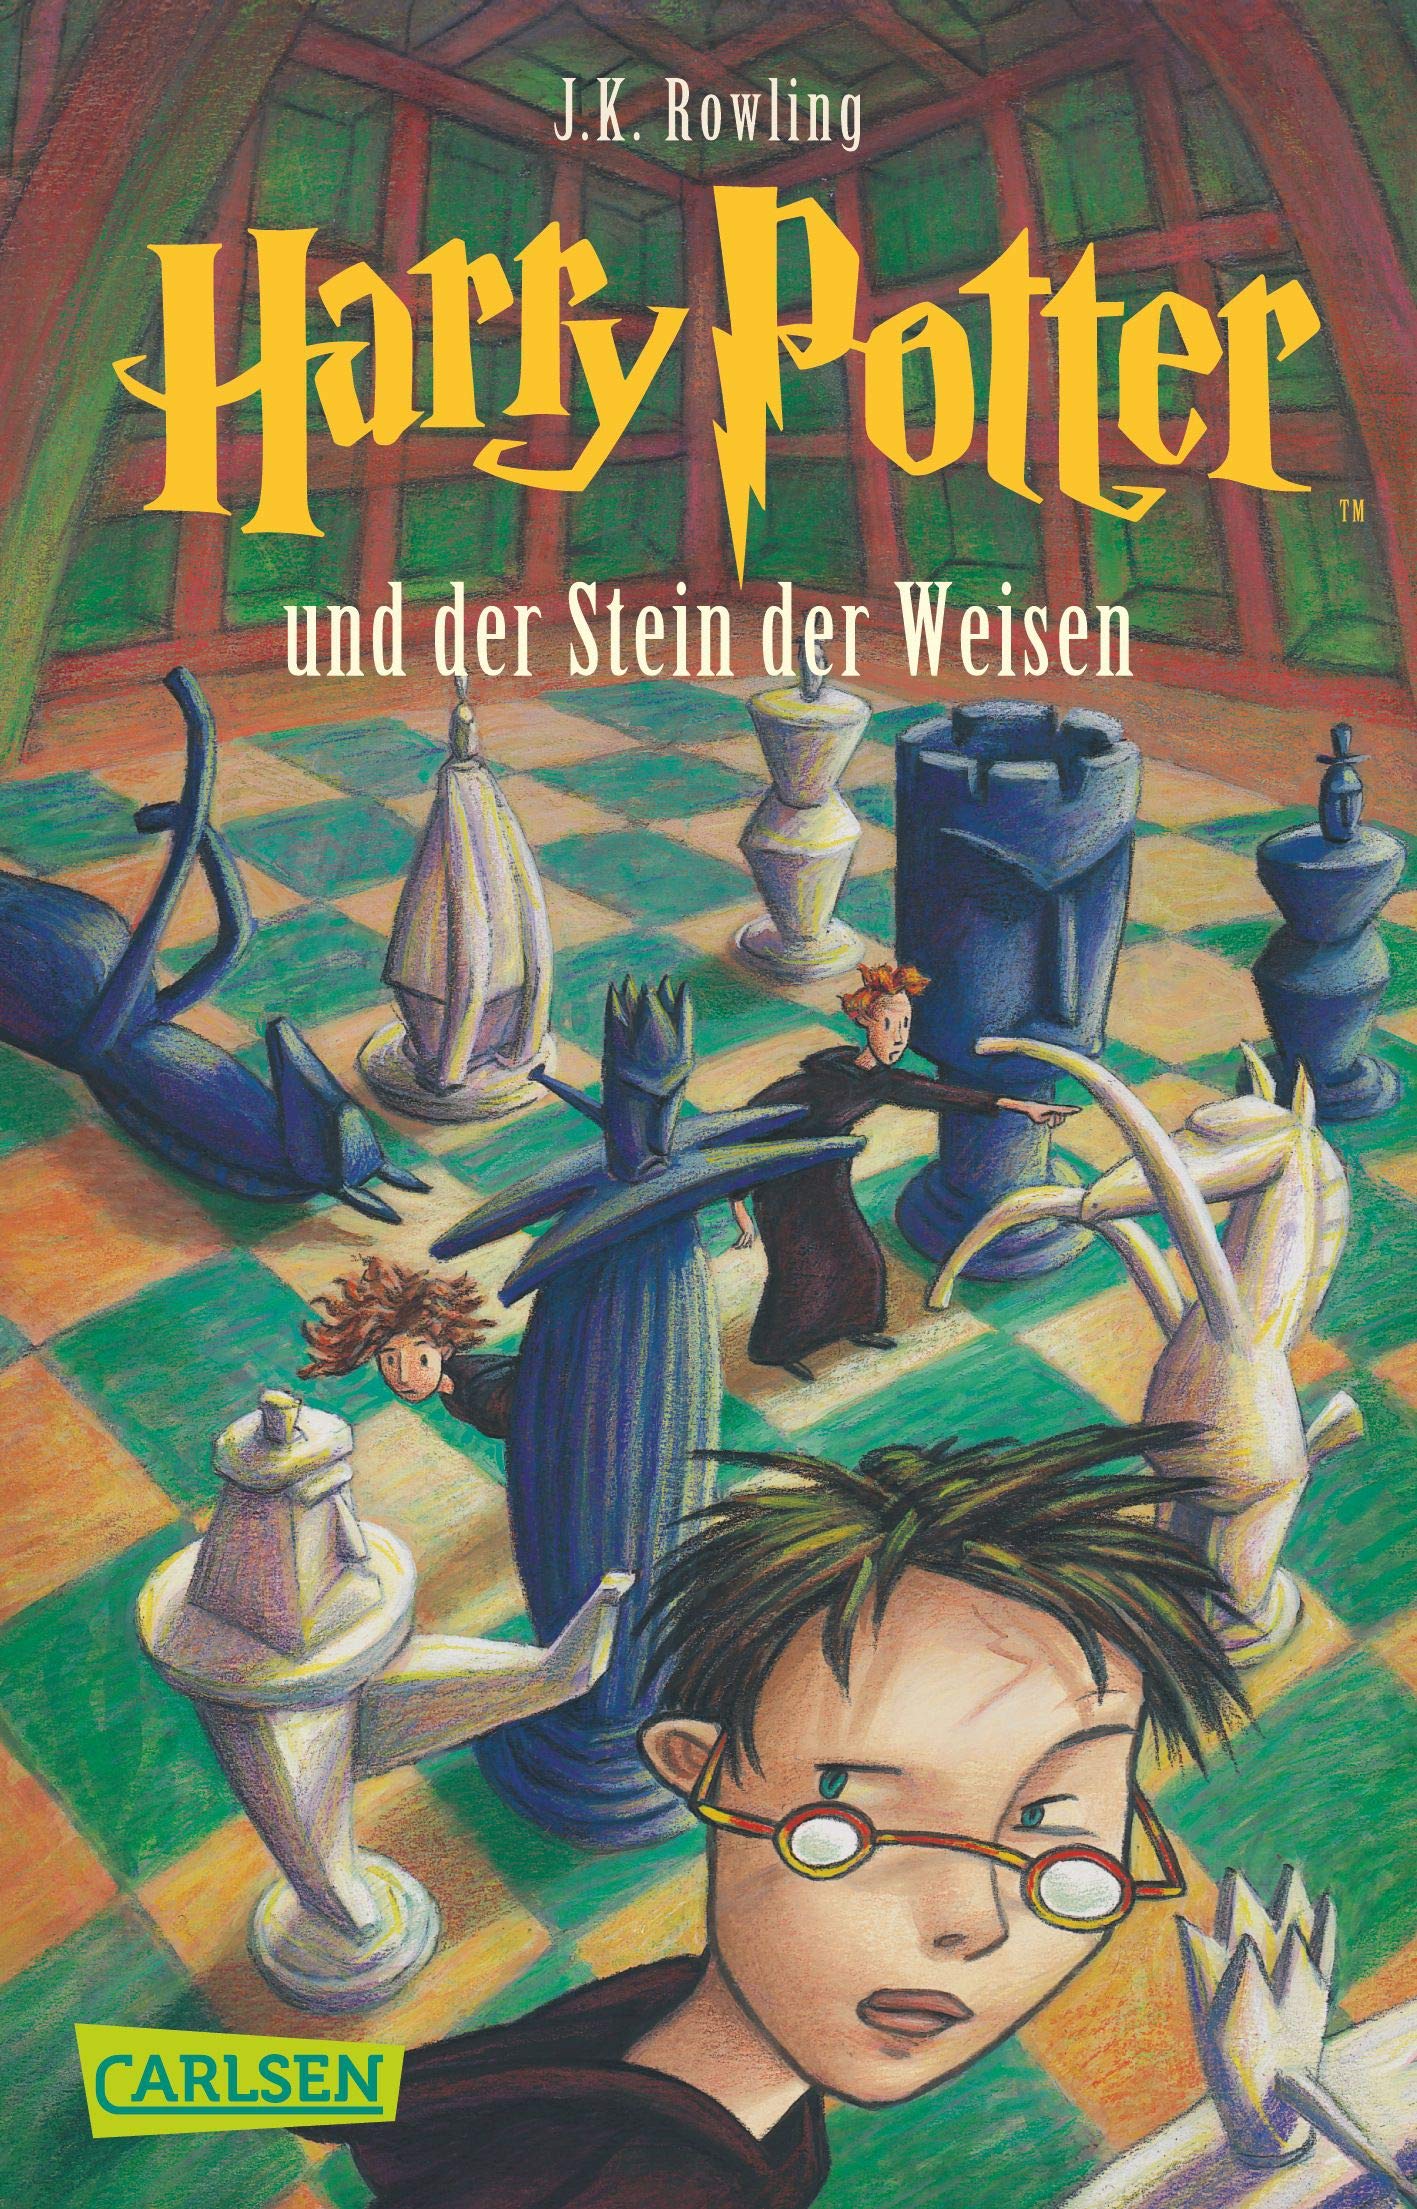 Harry Potter Und der Stein der Weisen (German Edition)